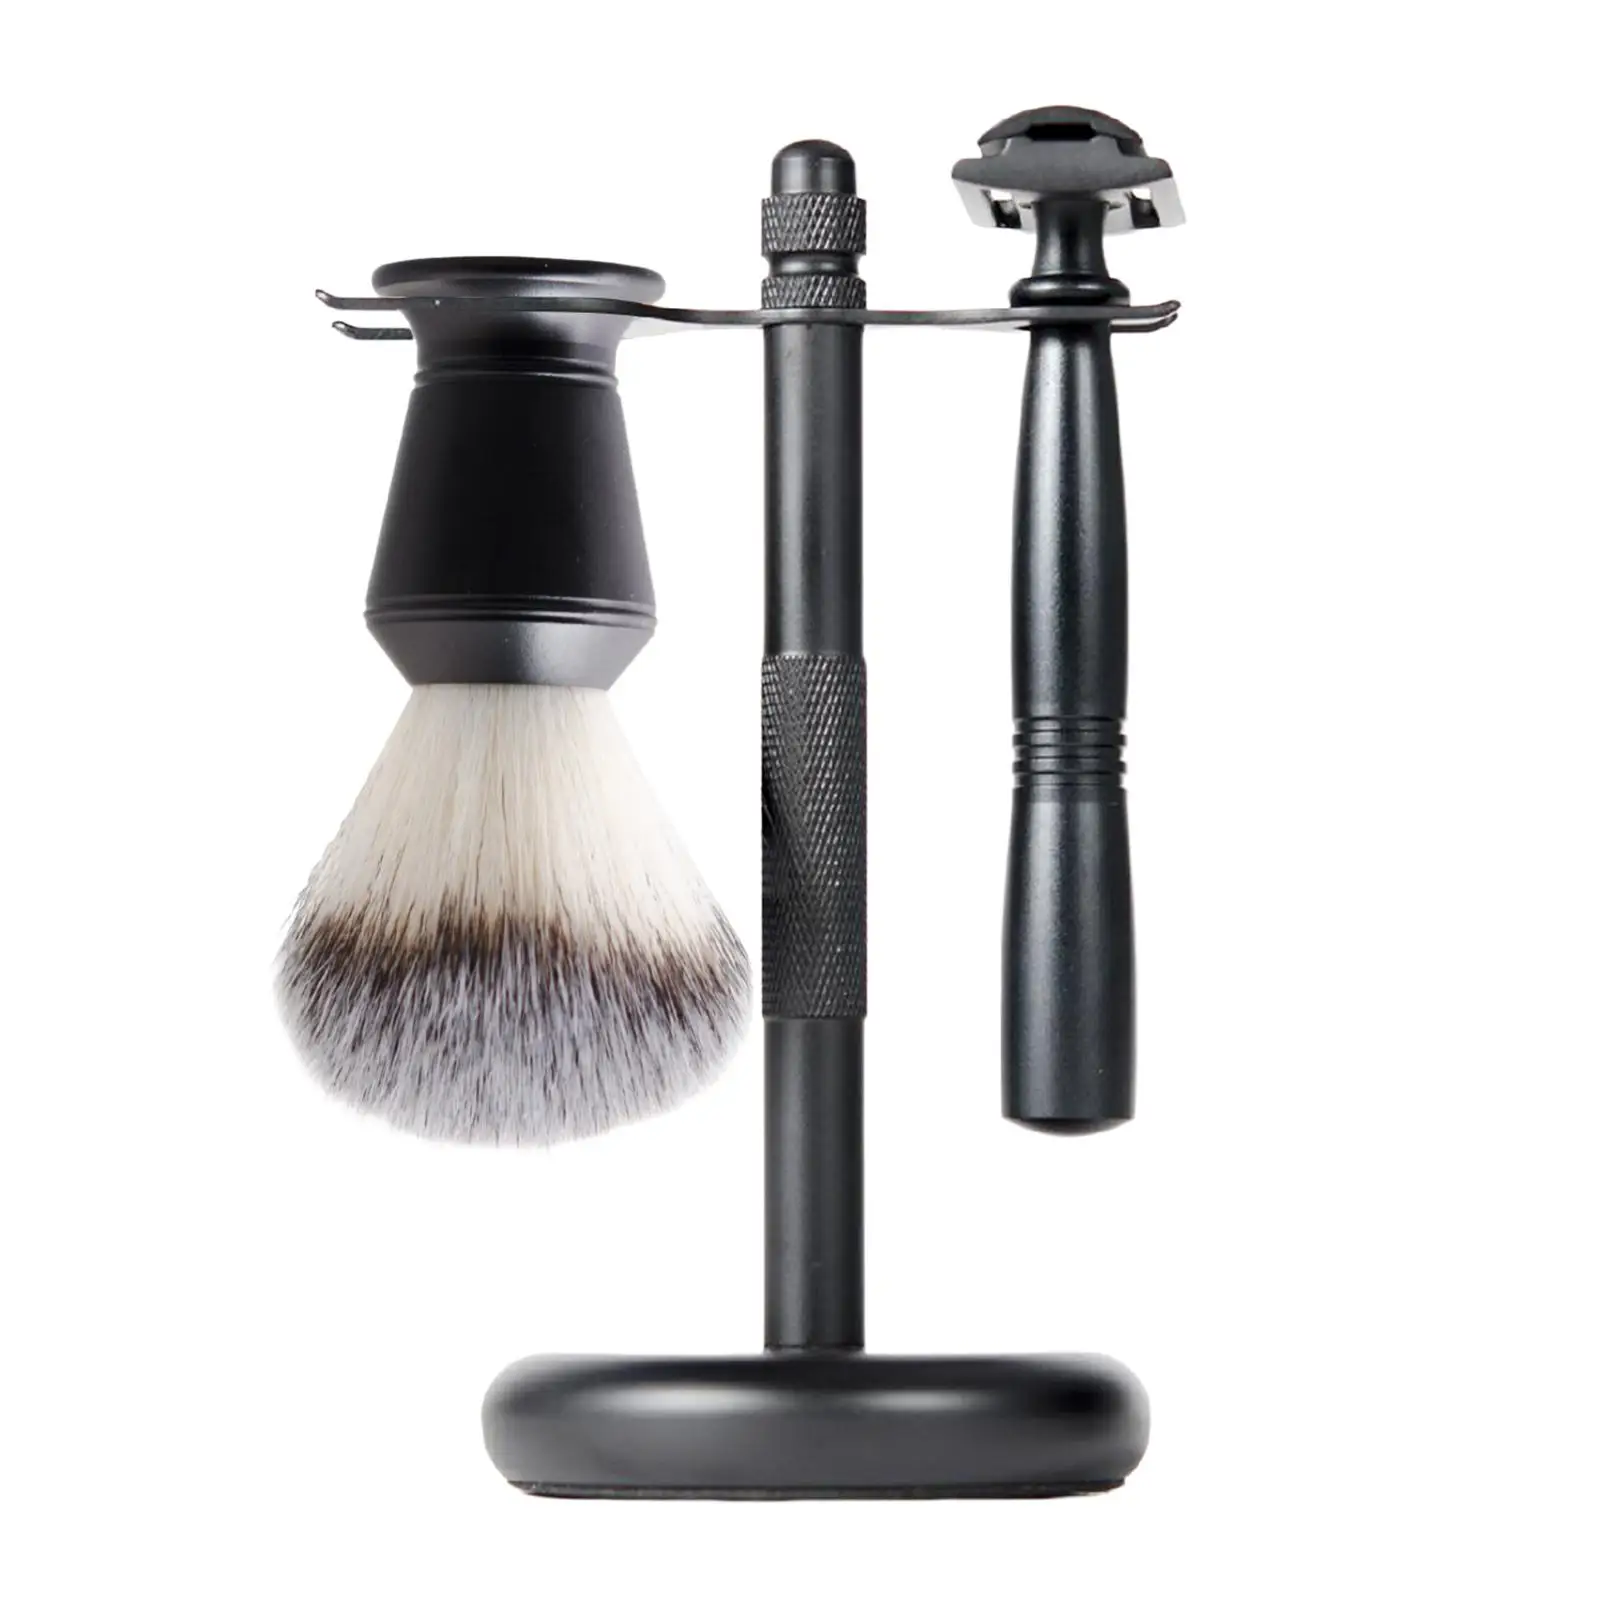 3Pcs Mens Shaving Set Black Double Edge Safety Razor Shaving Brush Stand Kit Razor+ Stand Holder + Shaving Brush Luxury Gift Set